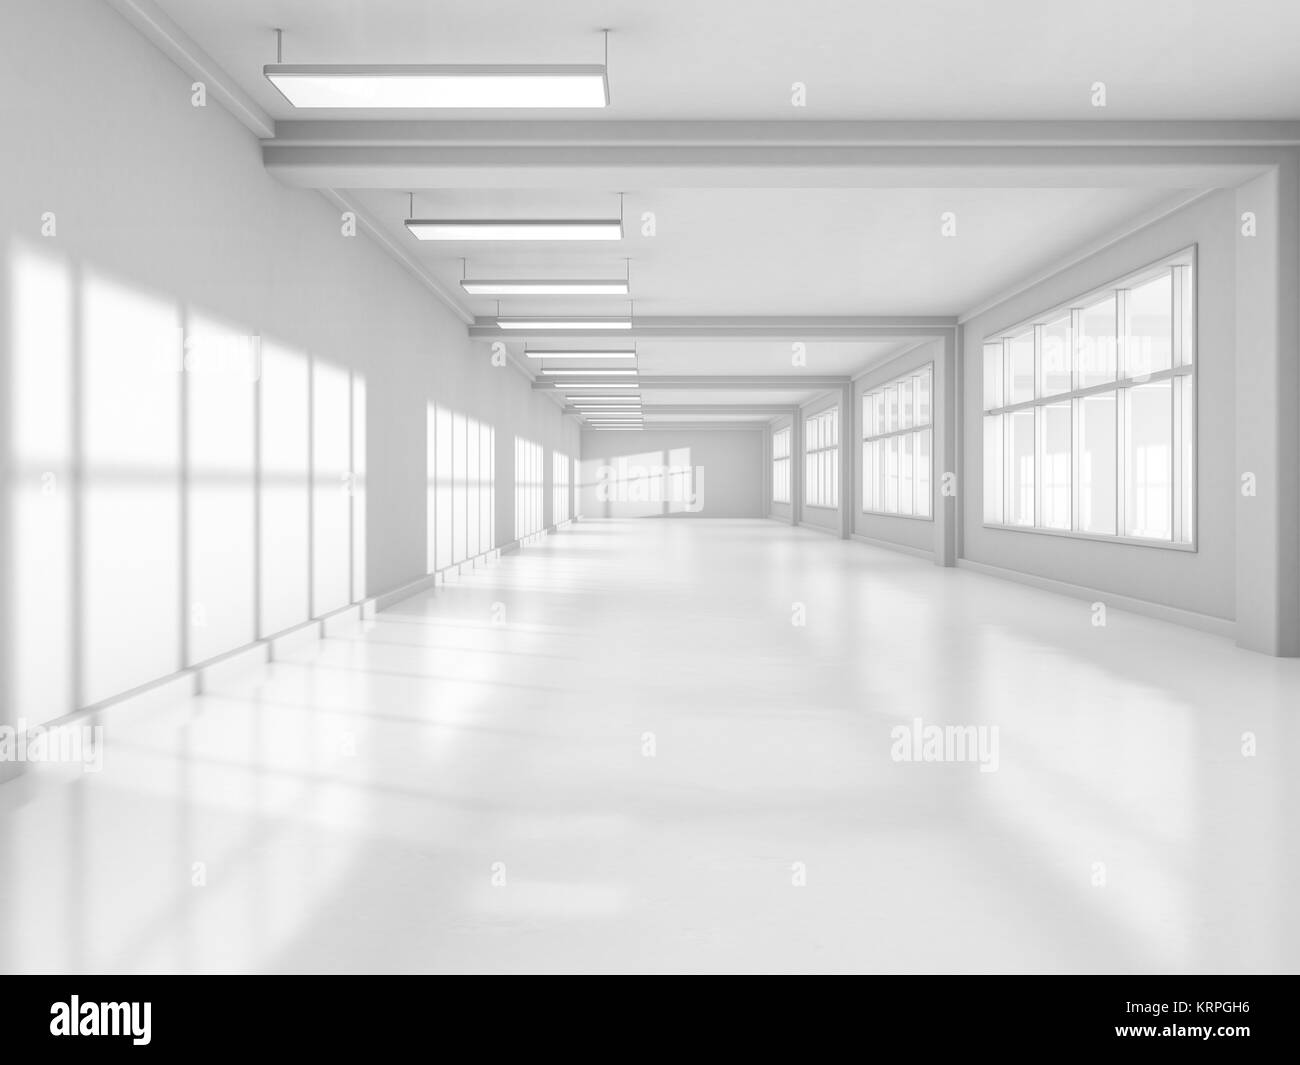 Résumé L'architecture moderne, l'arrière-plan blanc vide de l'espace ouvert de l'intérieur. Le rendu 3D Banque D'Images